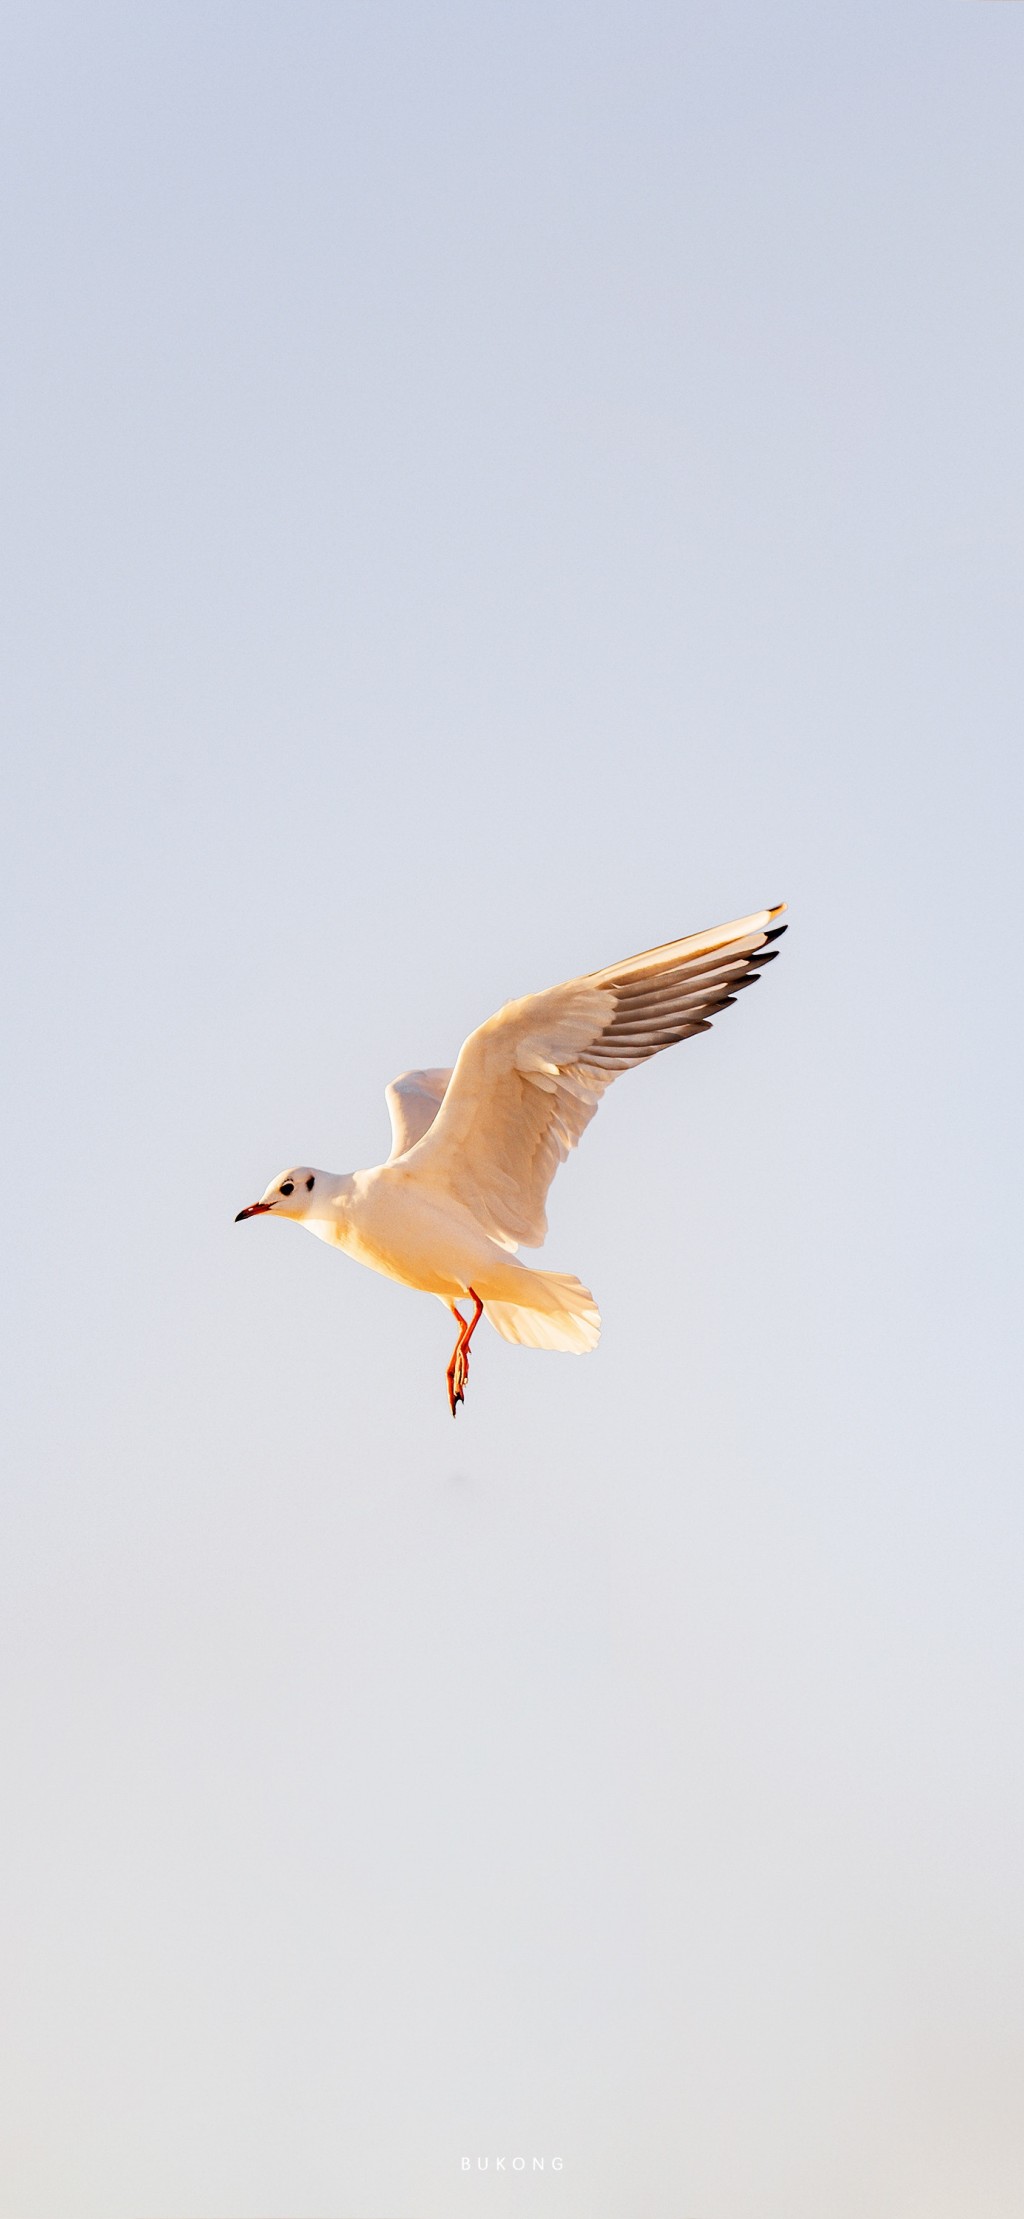 海鸥自由飞翔金色早安风景手机壁纸